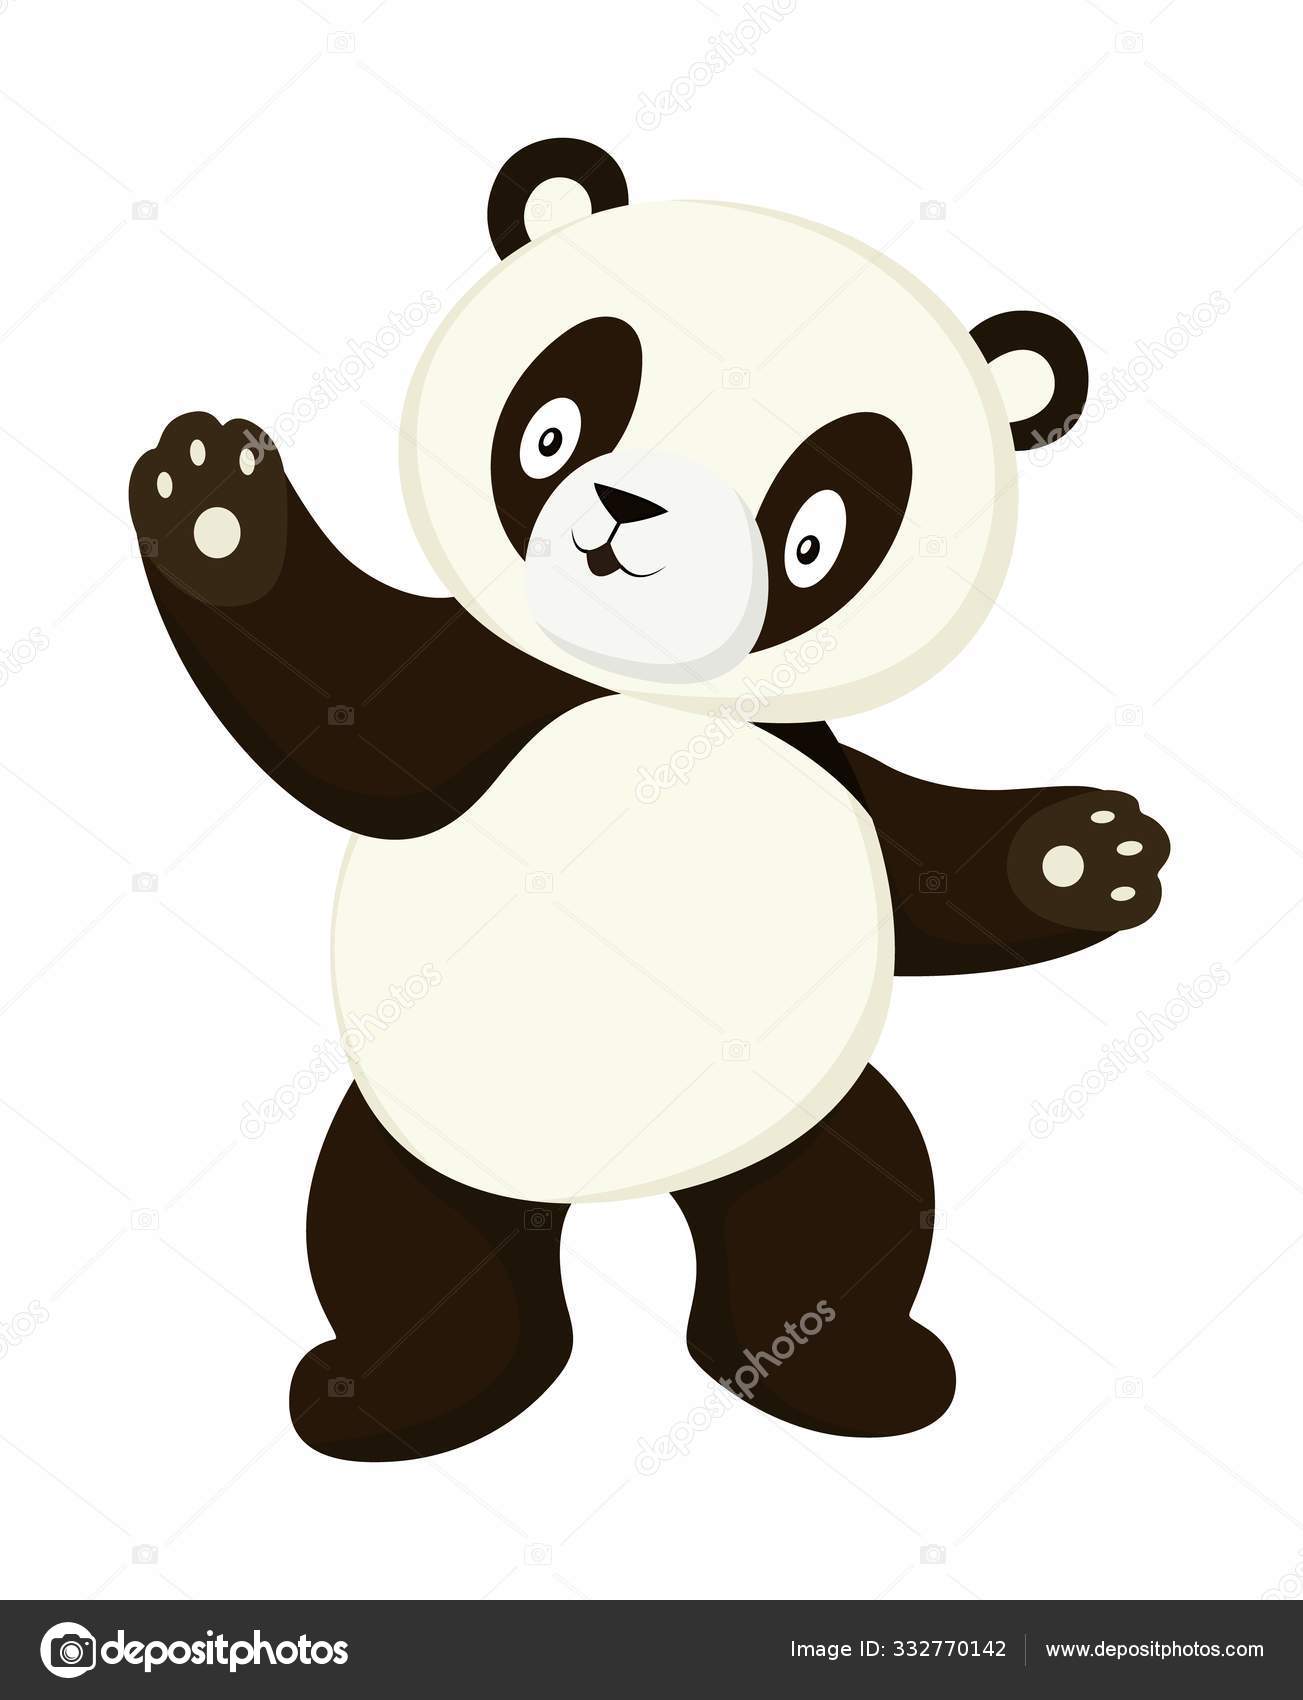 desenho panda facil